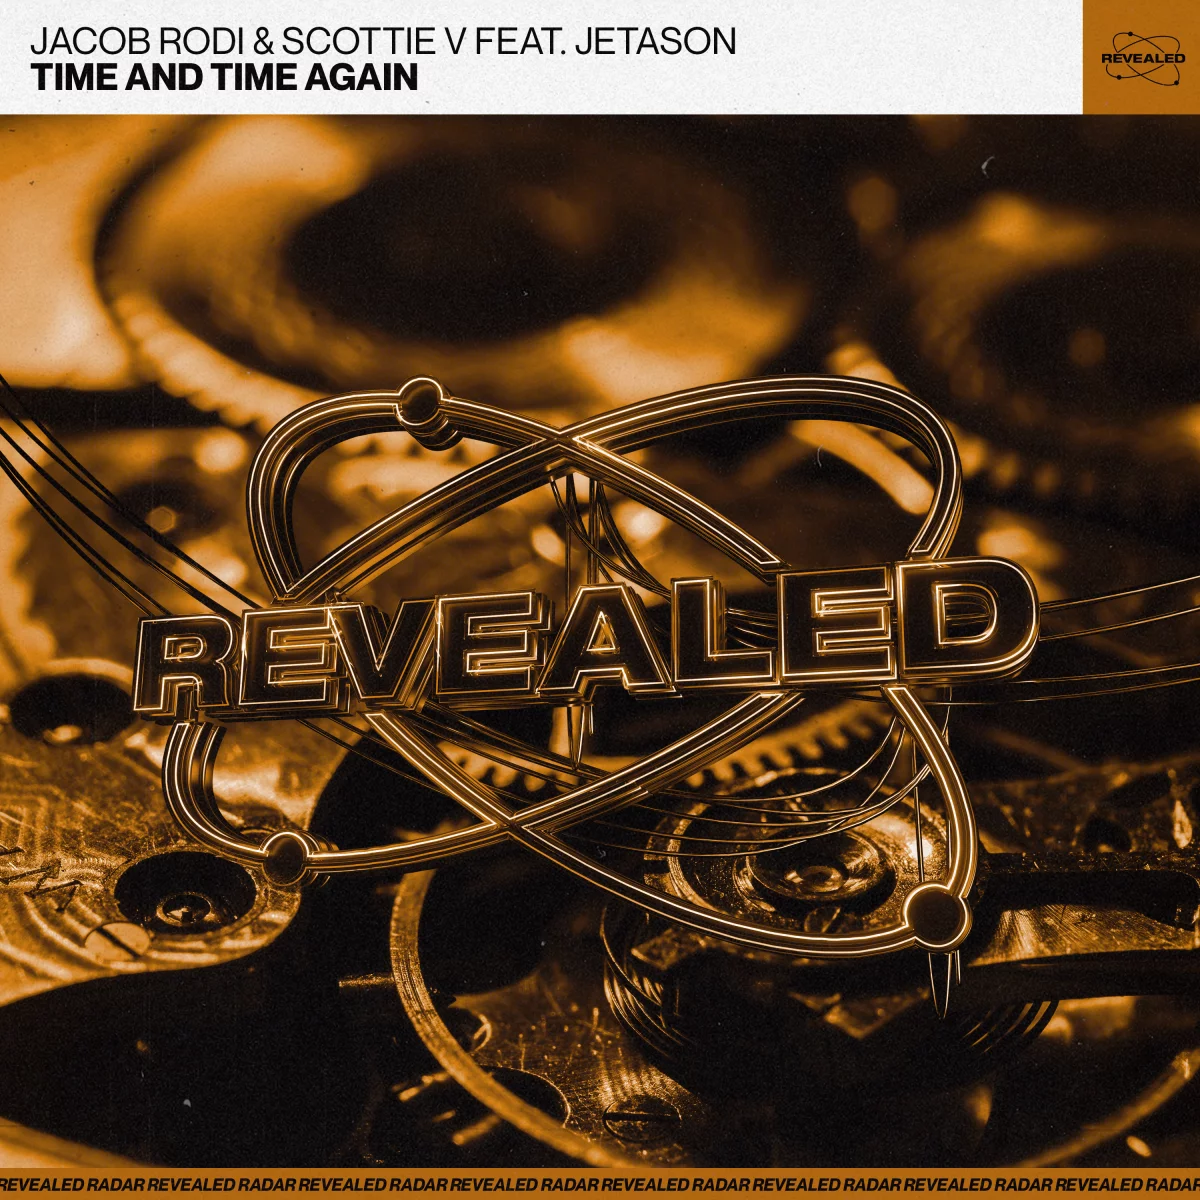 Time And Time Again - Jacob Rodi⁠ & Scottie V⁠ feat. Jetason⁠ 